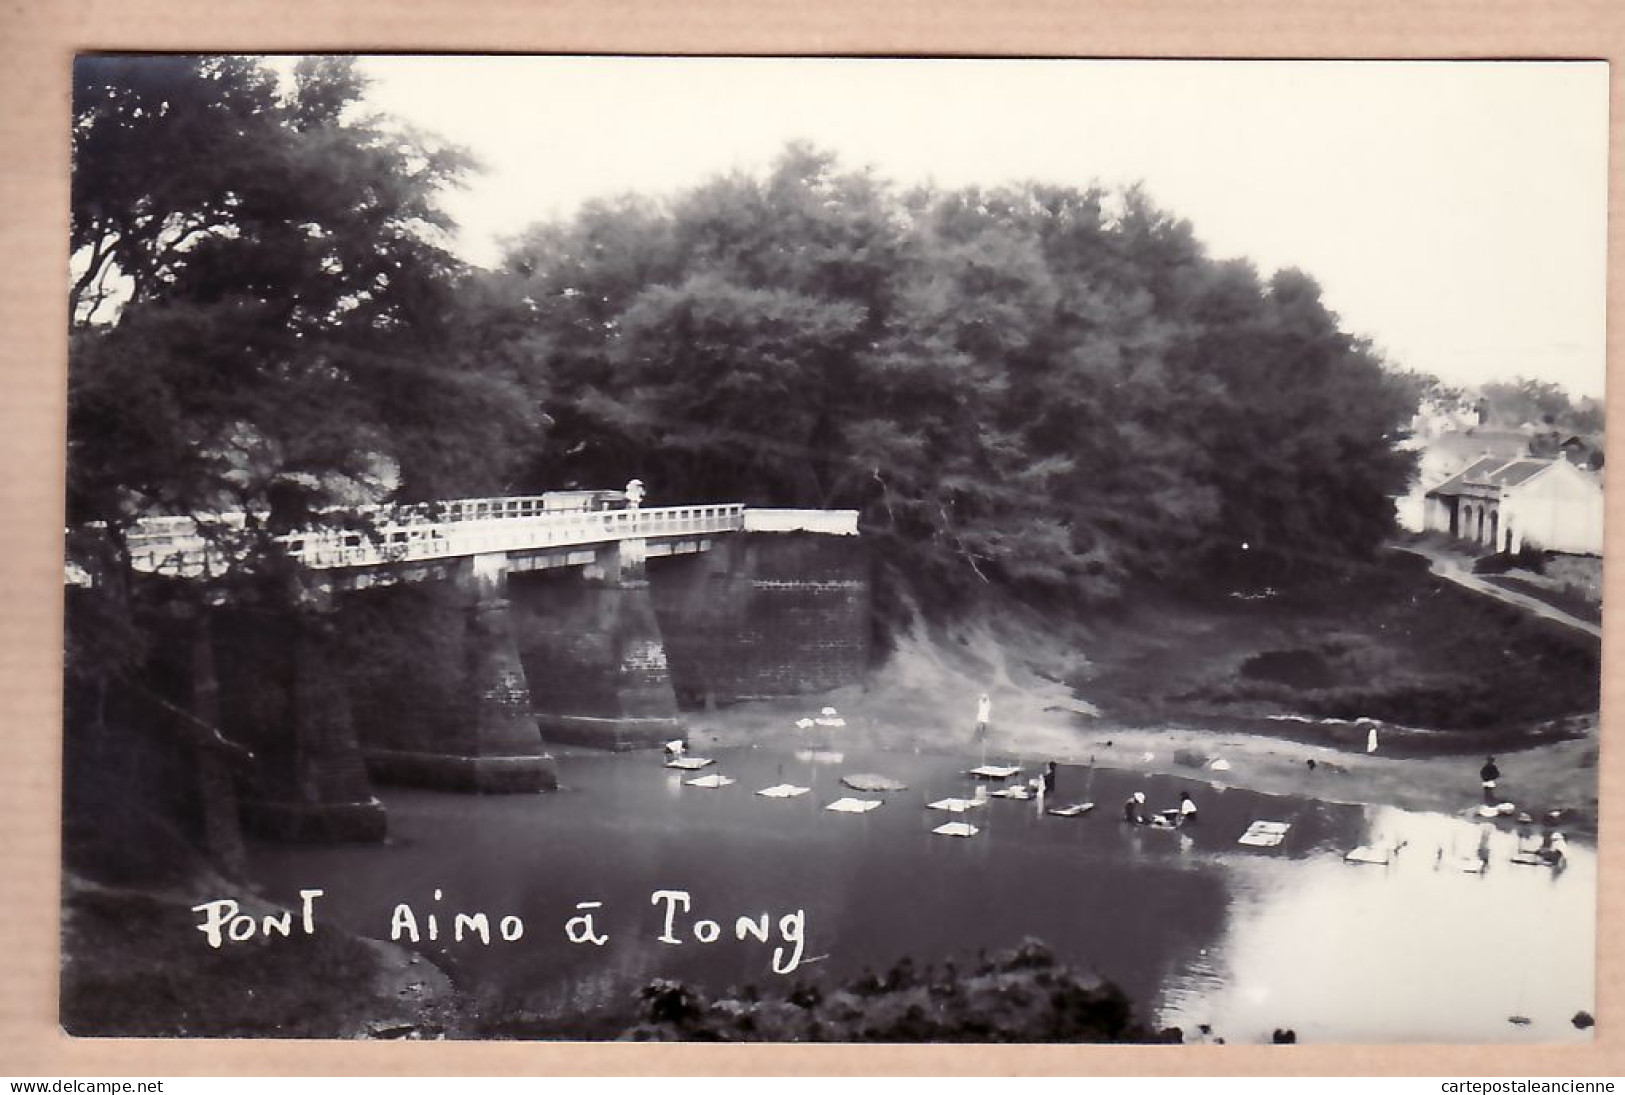 01007 ● Carte-Photo TONG PONT AIMO (vue 3) Vietnam Indochine Viet-Nam 1930s Album ROSSIGNOL - Viêt-Nam